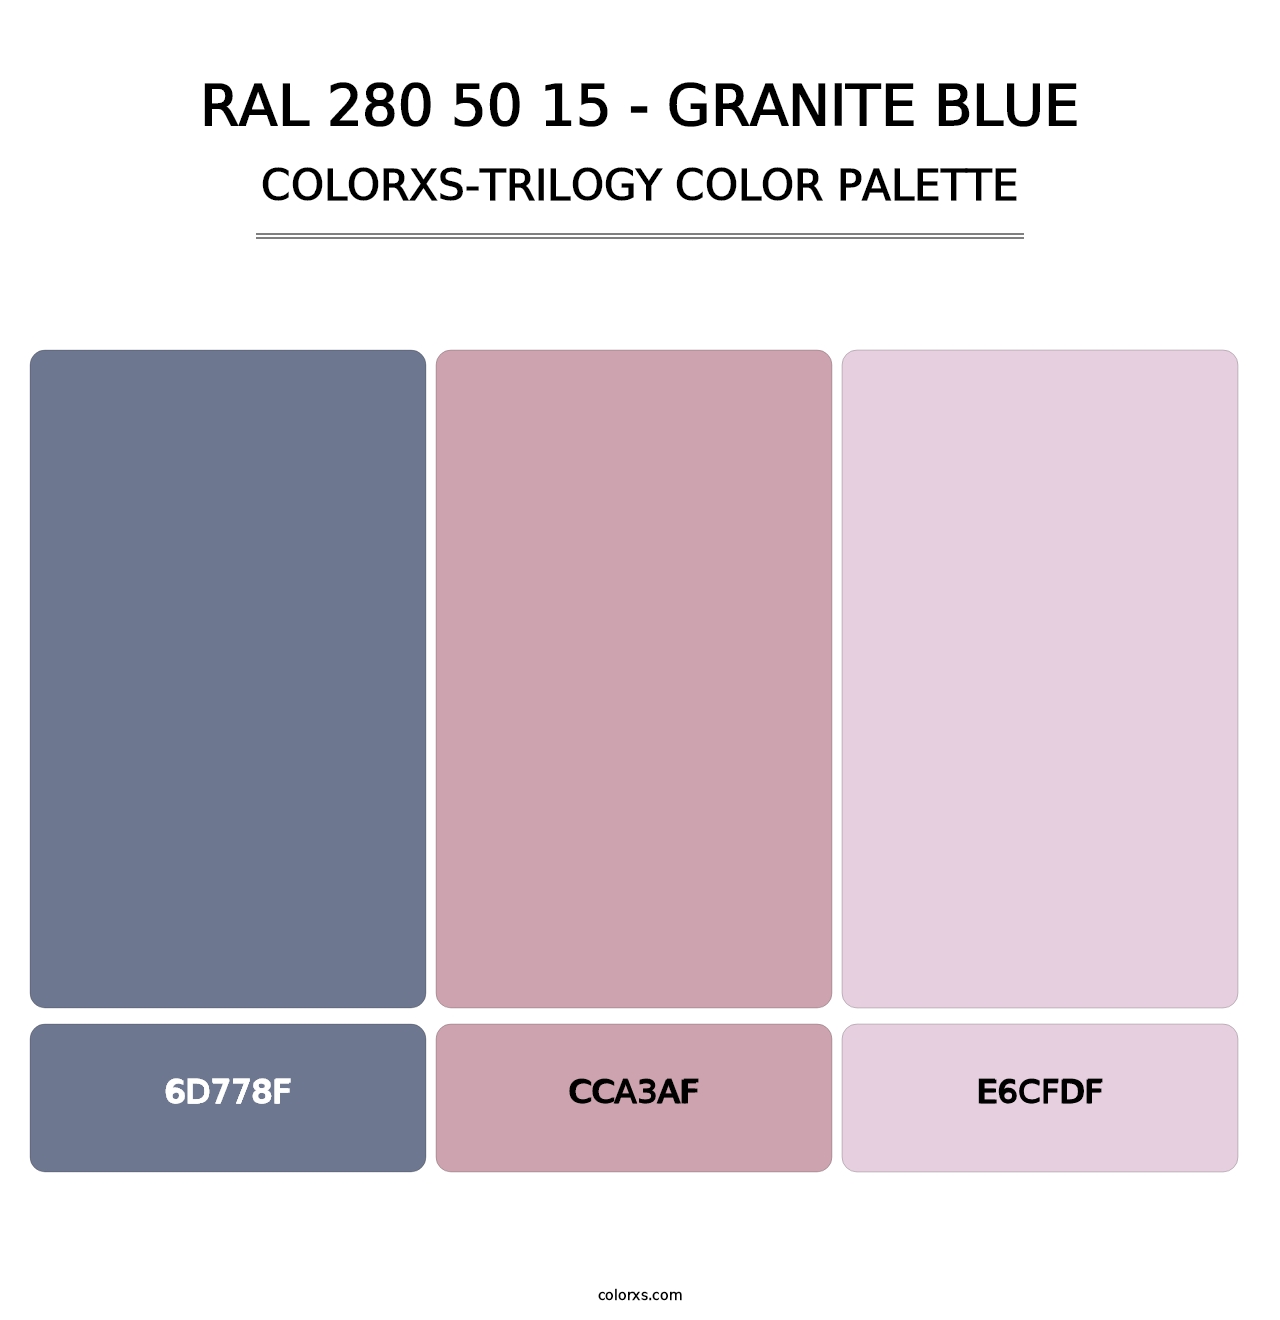 RAL 280 50 15 - Granite Blue - Colorxs Trilogy Palette